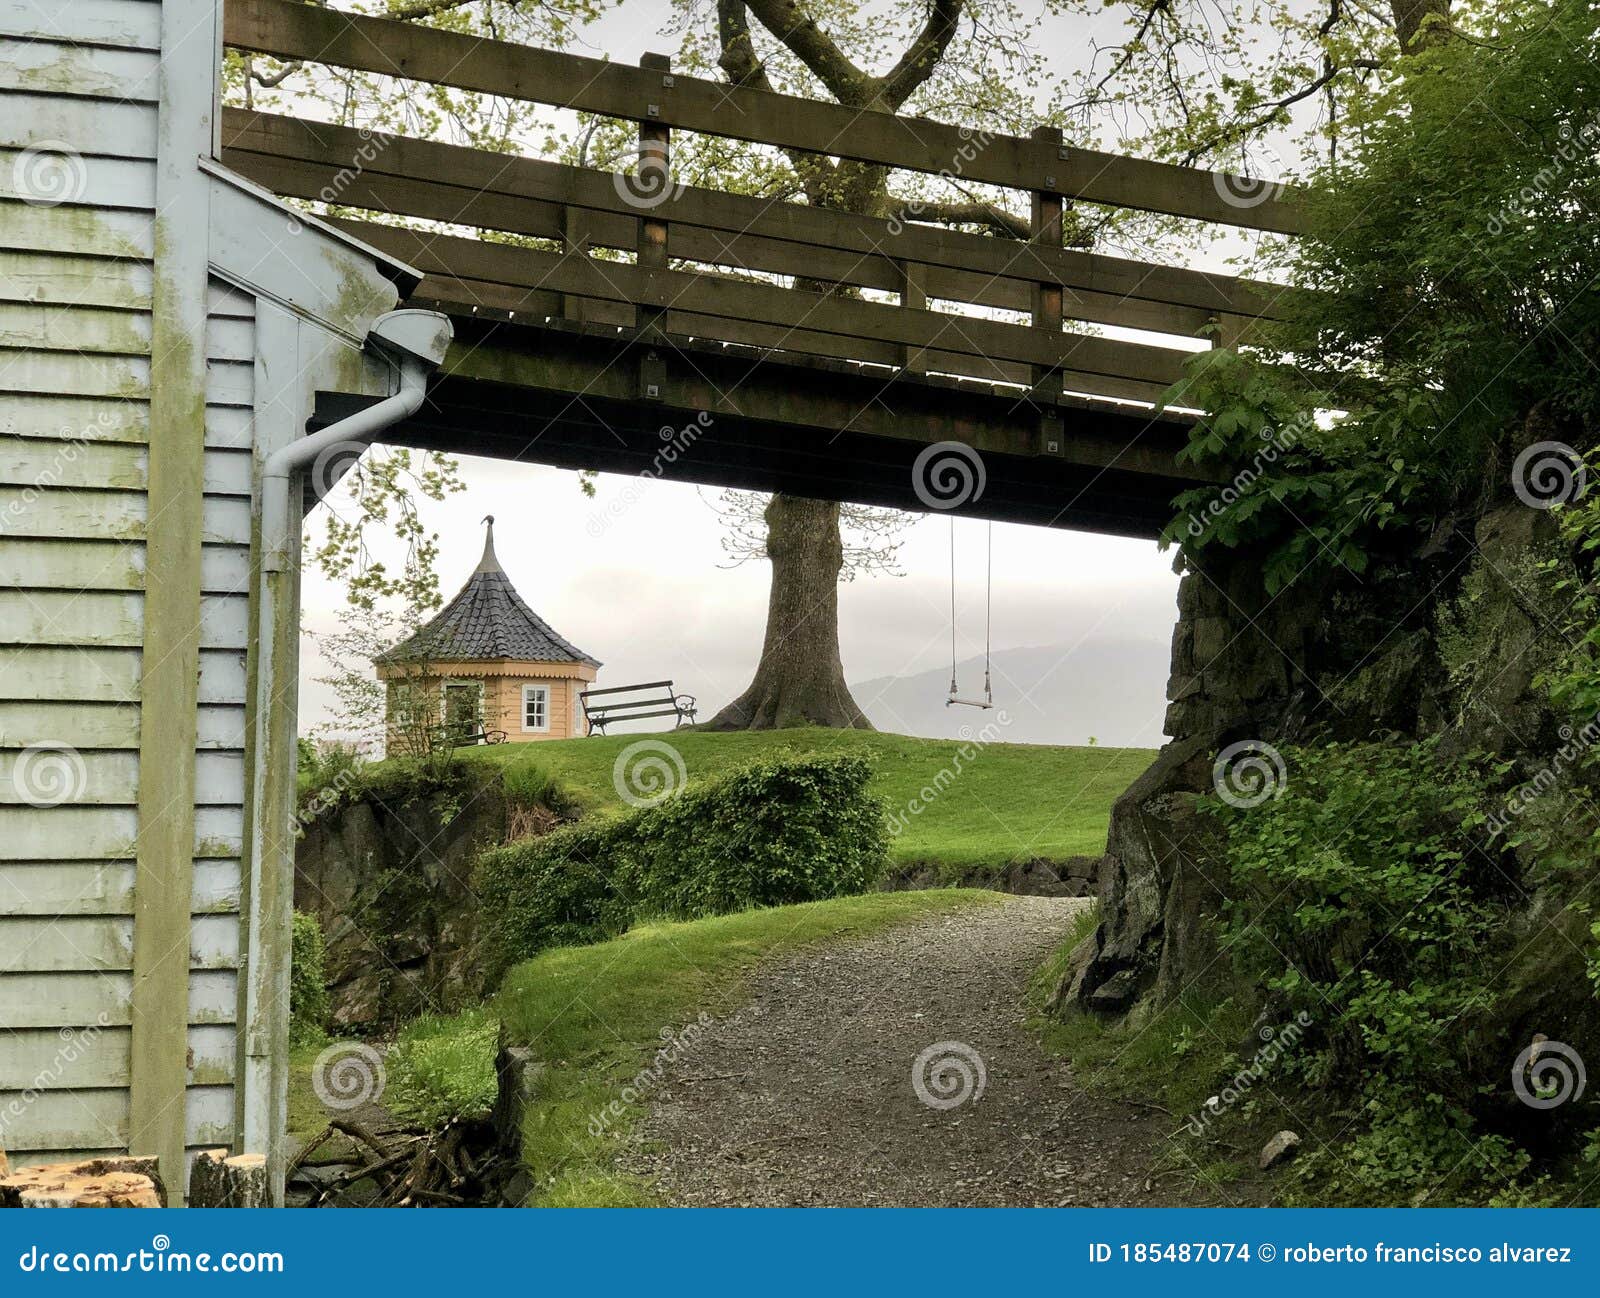 bridge tree view with swing